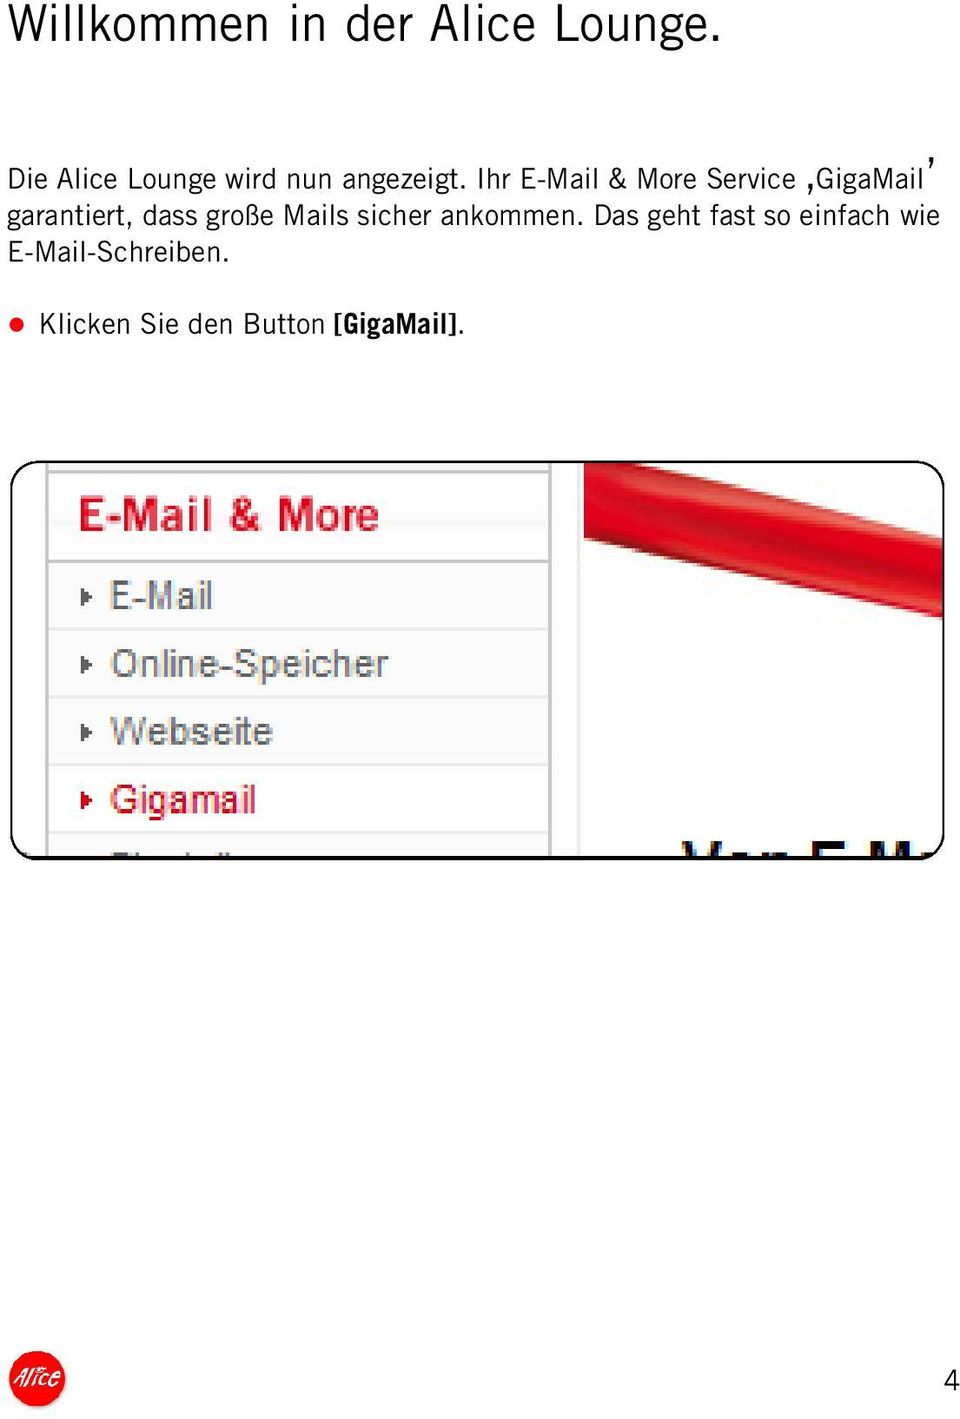 Ihr E-Mail & More Service GigaMail garantiert, dass große